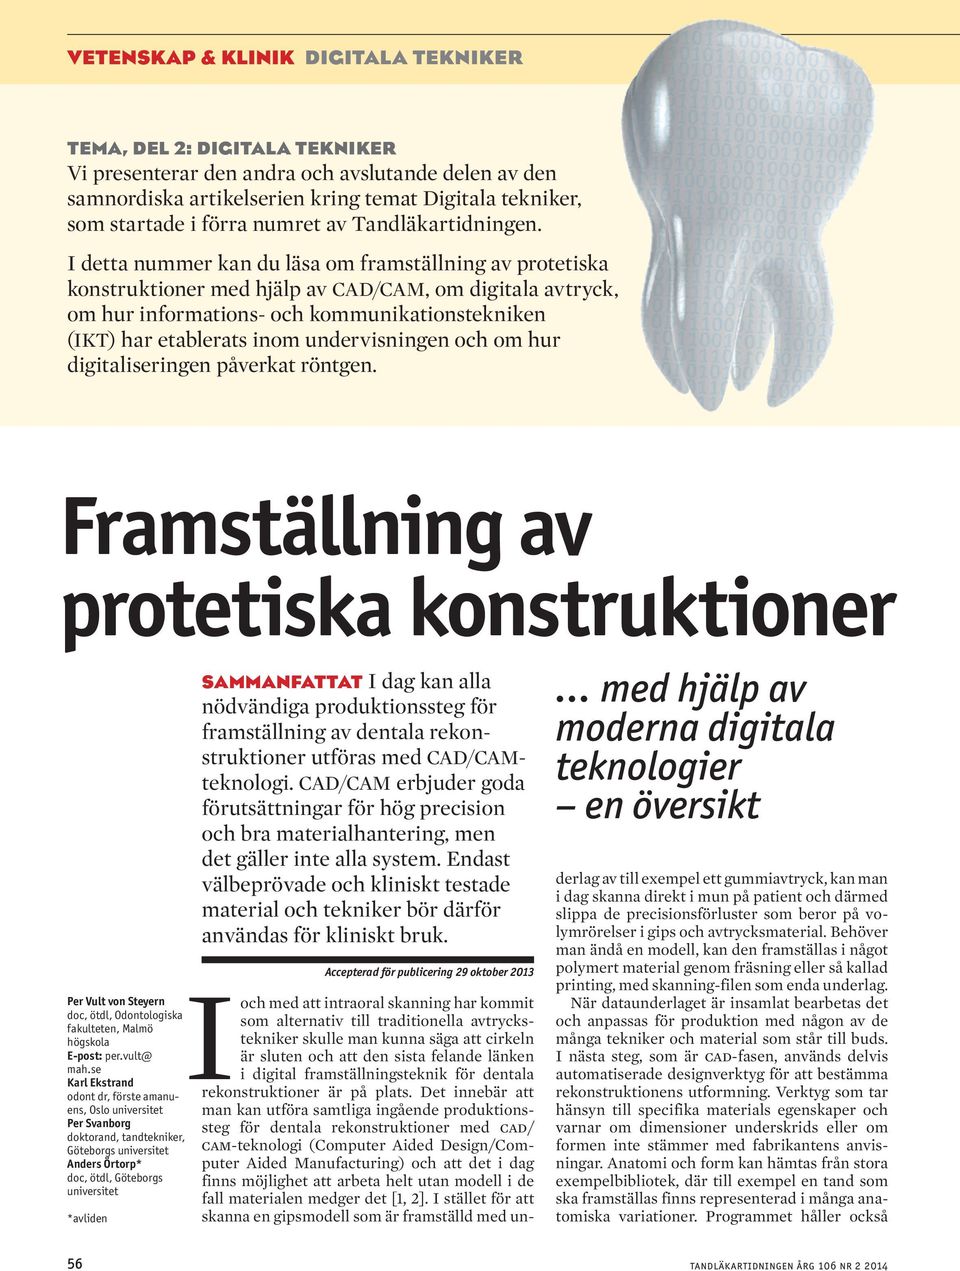 undervisningen och om hur digitaliseringen påverkat röntgen. Framställning av protetiska konstruktioner Per Vult von Steyern doc, ötdl, Odontologiska fakulteten, Malmö högskola E-post: per.vult@ mah.